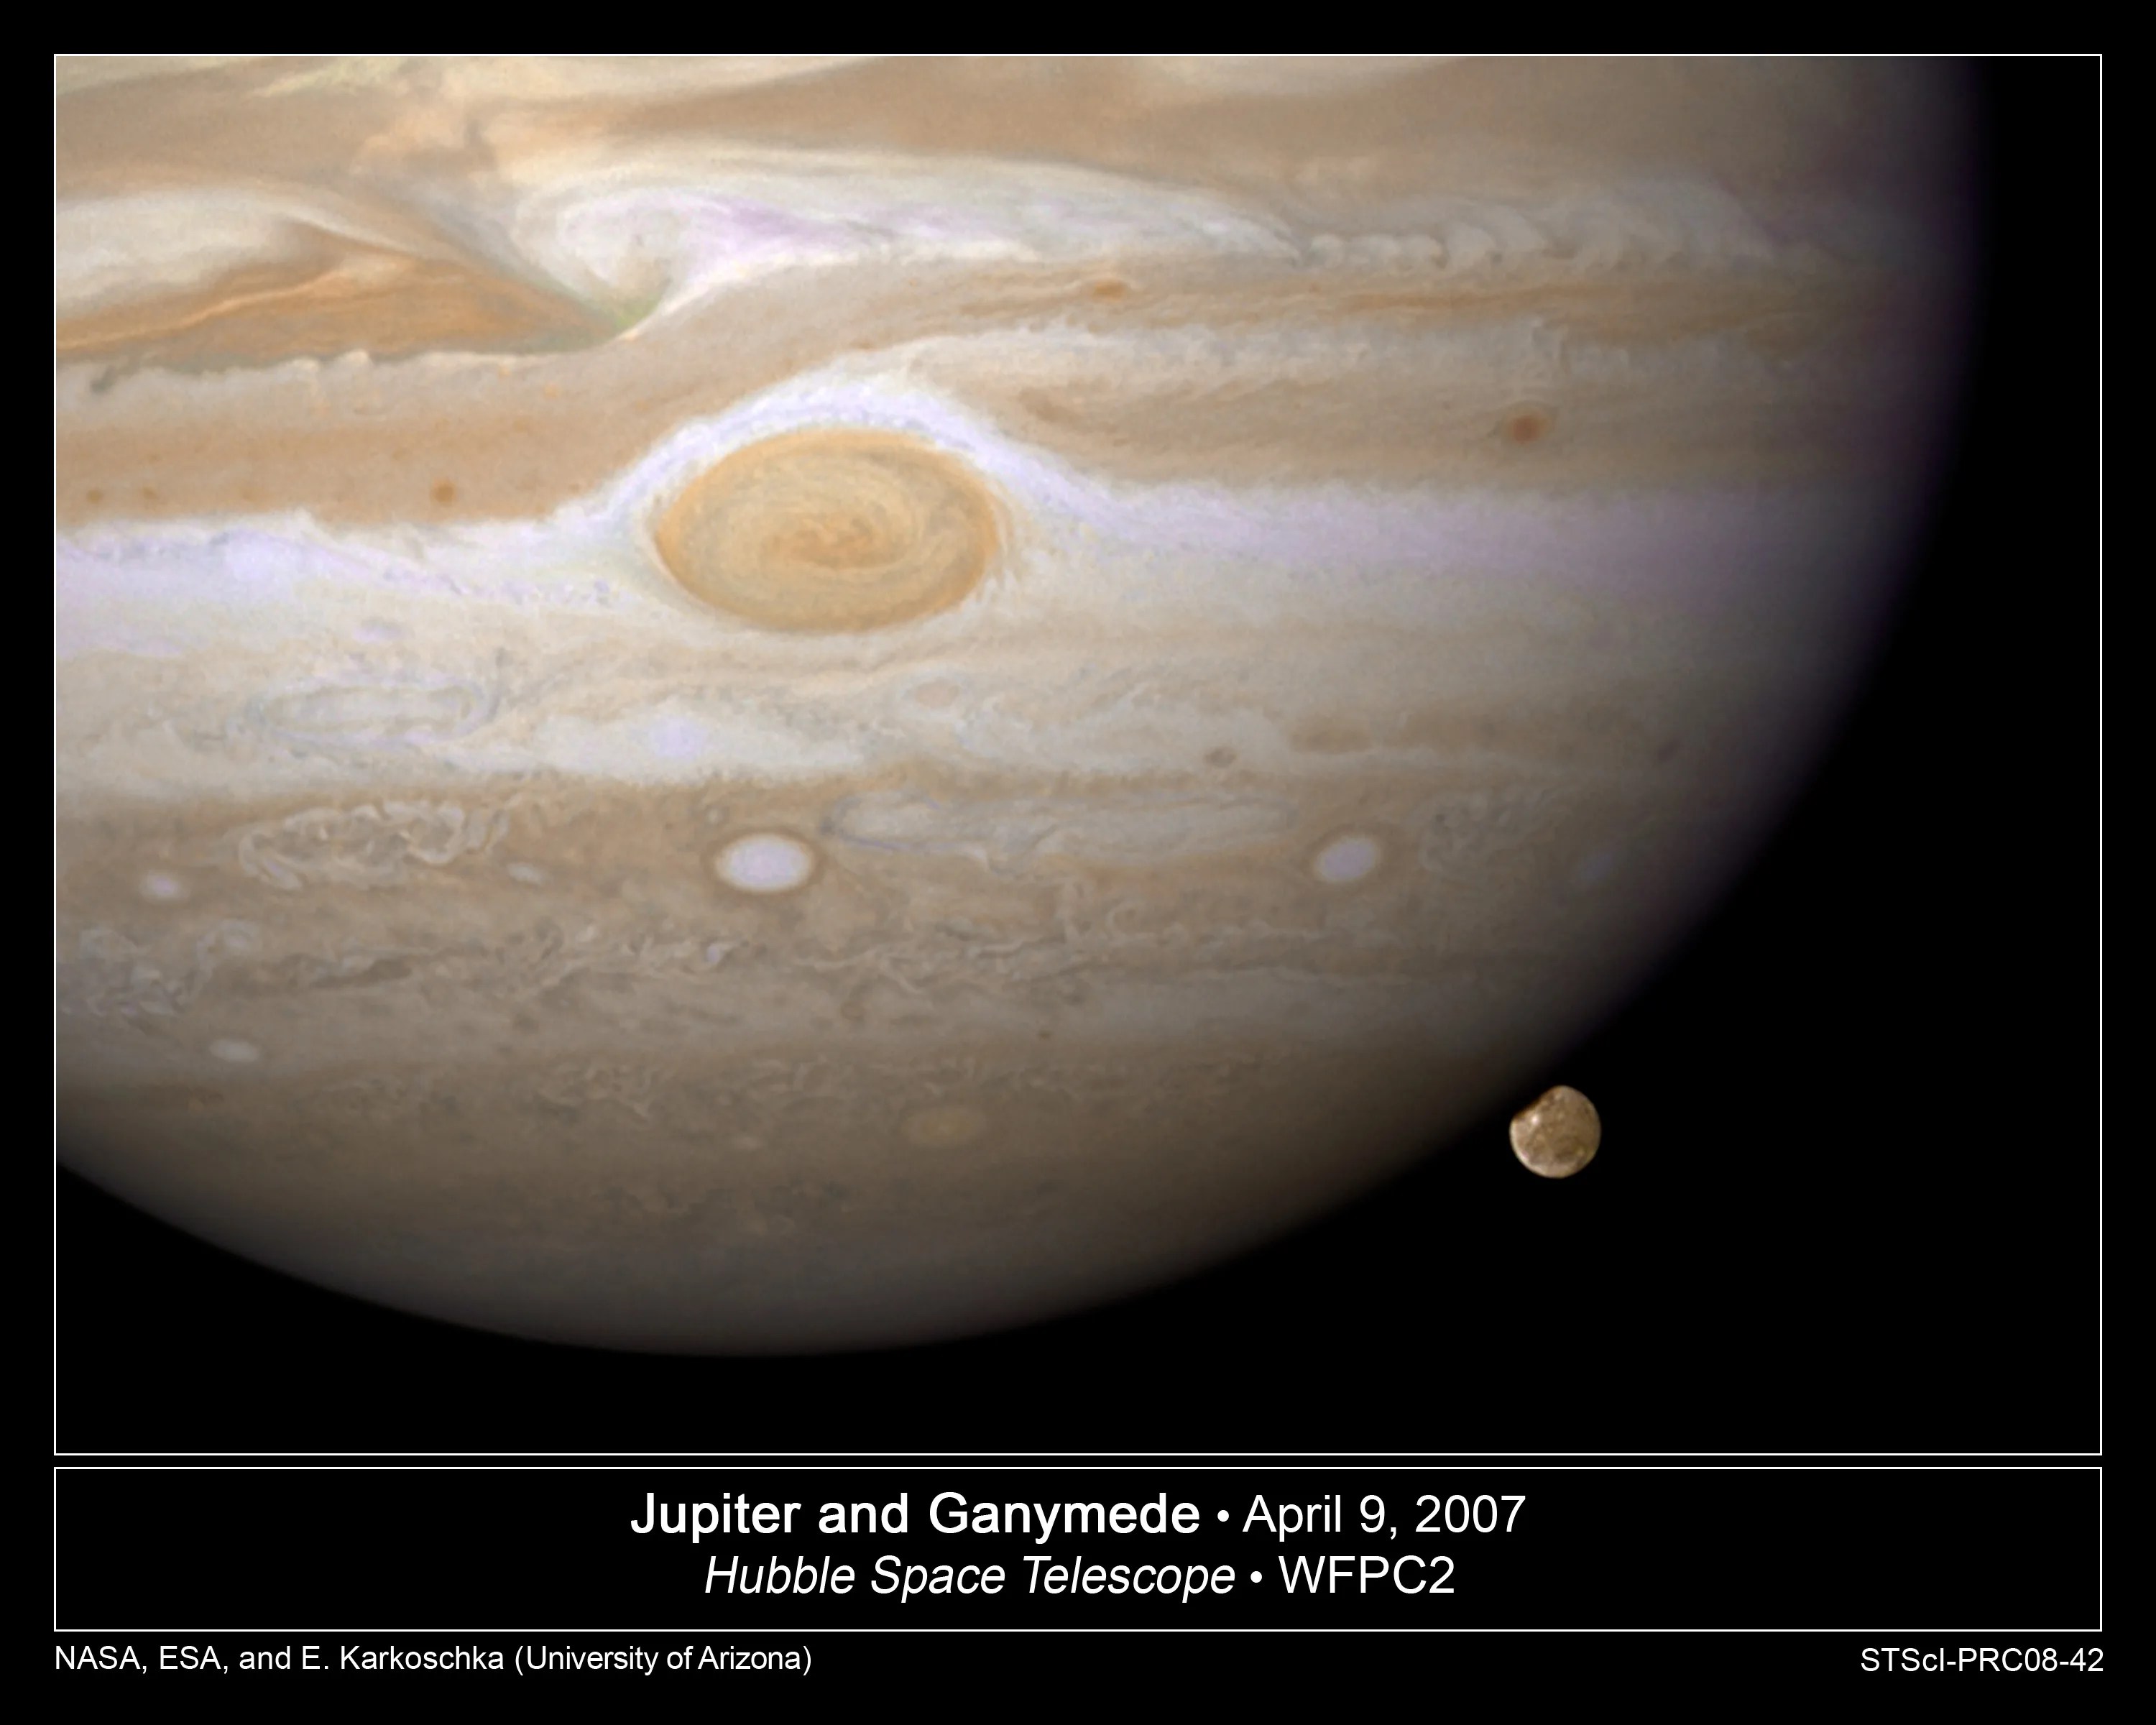 Hubble image of Jupiter and Ganymede